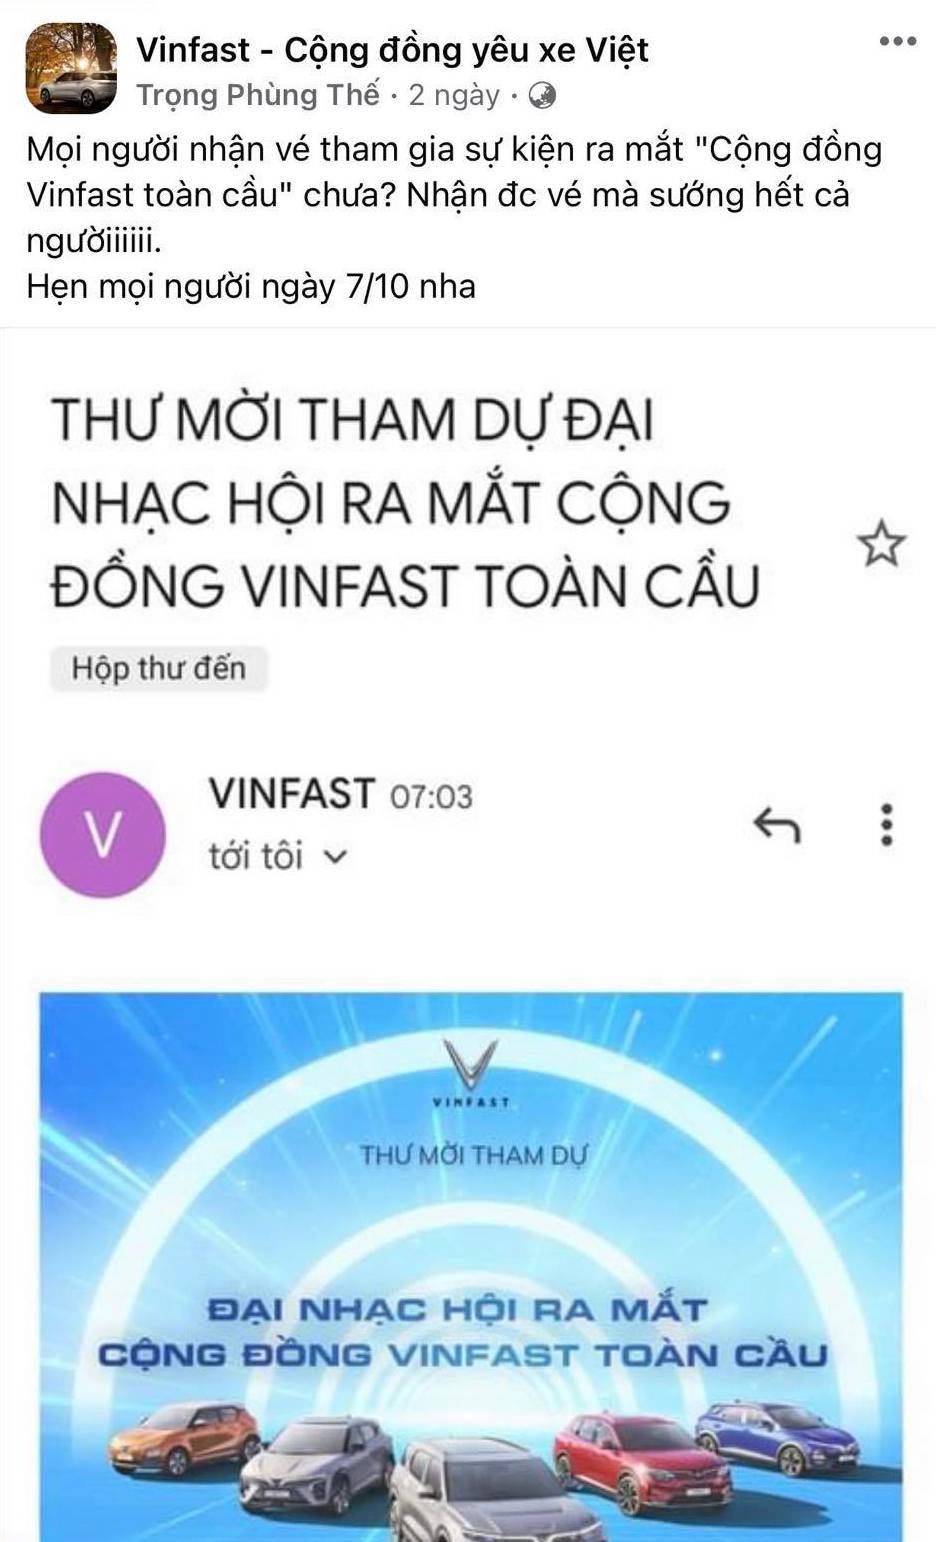 Vé đại nhạc hội ra mắt Cộng đồng VinFast toàn cầu gây sốt cộng đồng mạng vinfast-toan-cau-02.jpeg